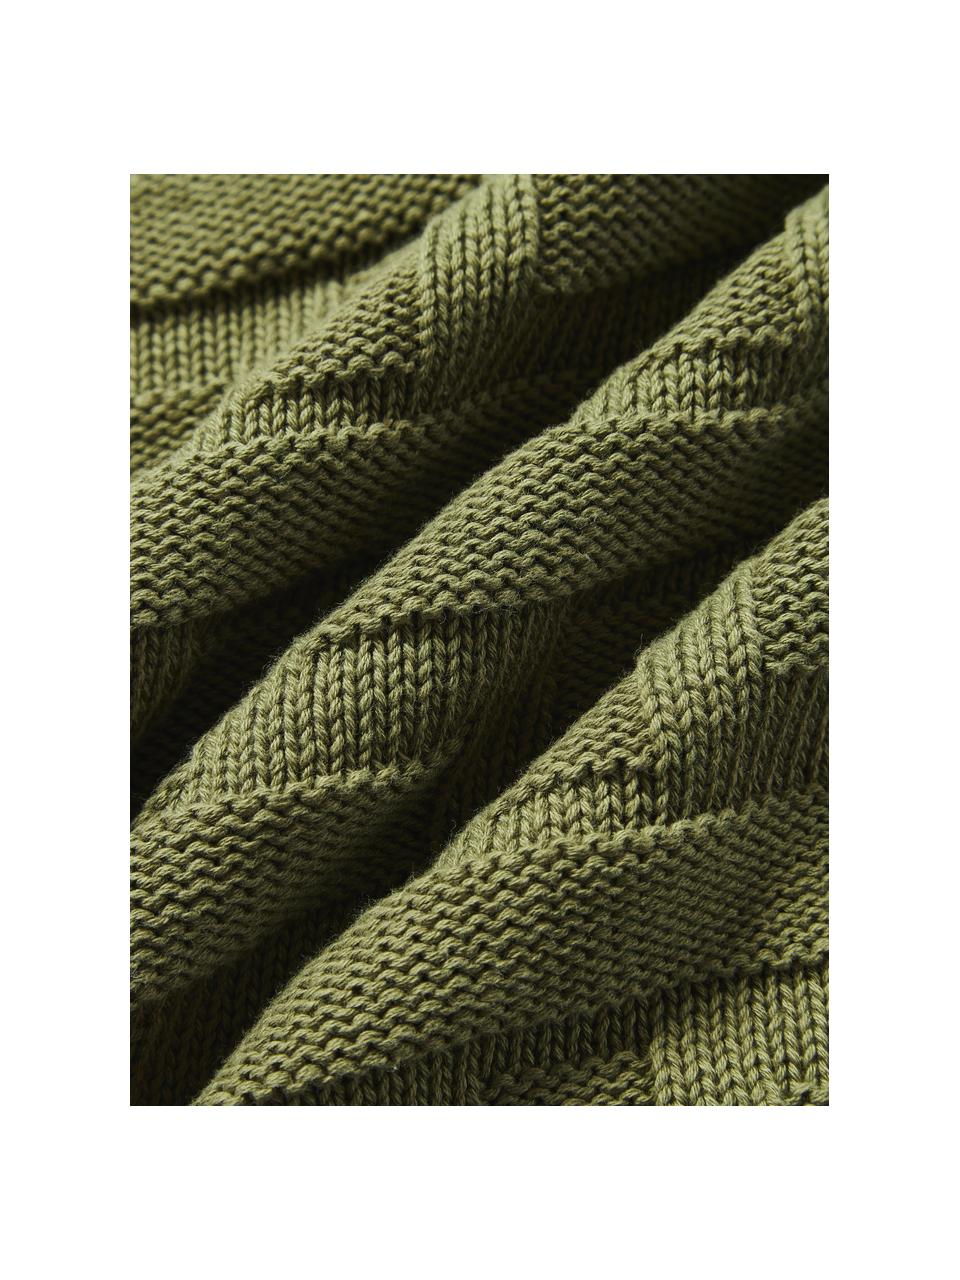 Copricuscino in cotone a maglia Gwen, 100% cotone, Verde oliva, Larg. 50 x Lung. 50 cm